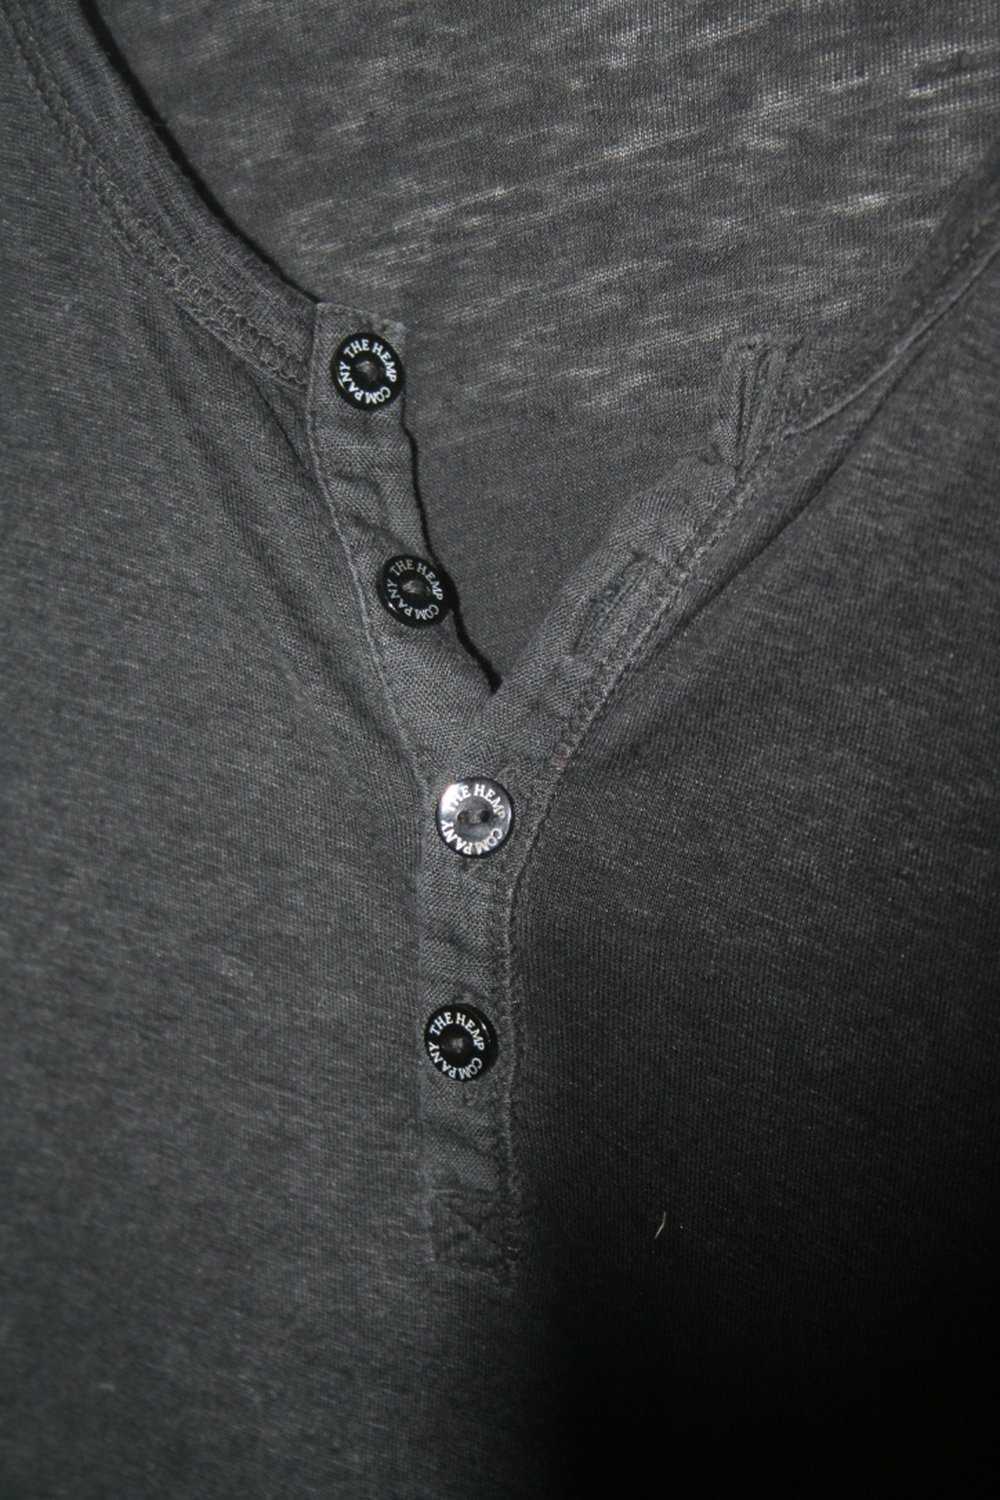 Hanf Shirt mit Knopfleiste (Farbe: Schwarz - wirkt meliert)